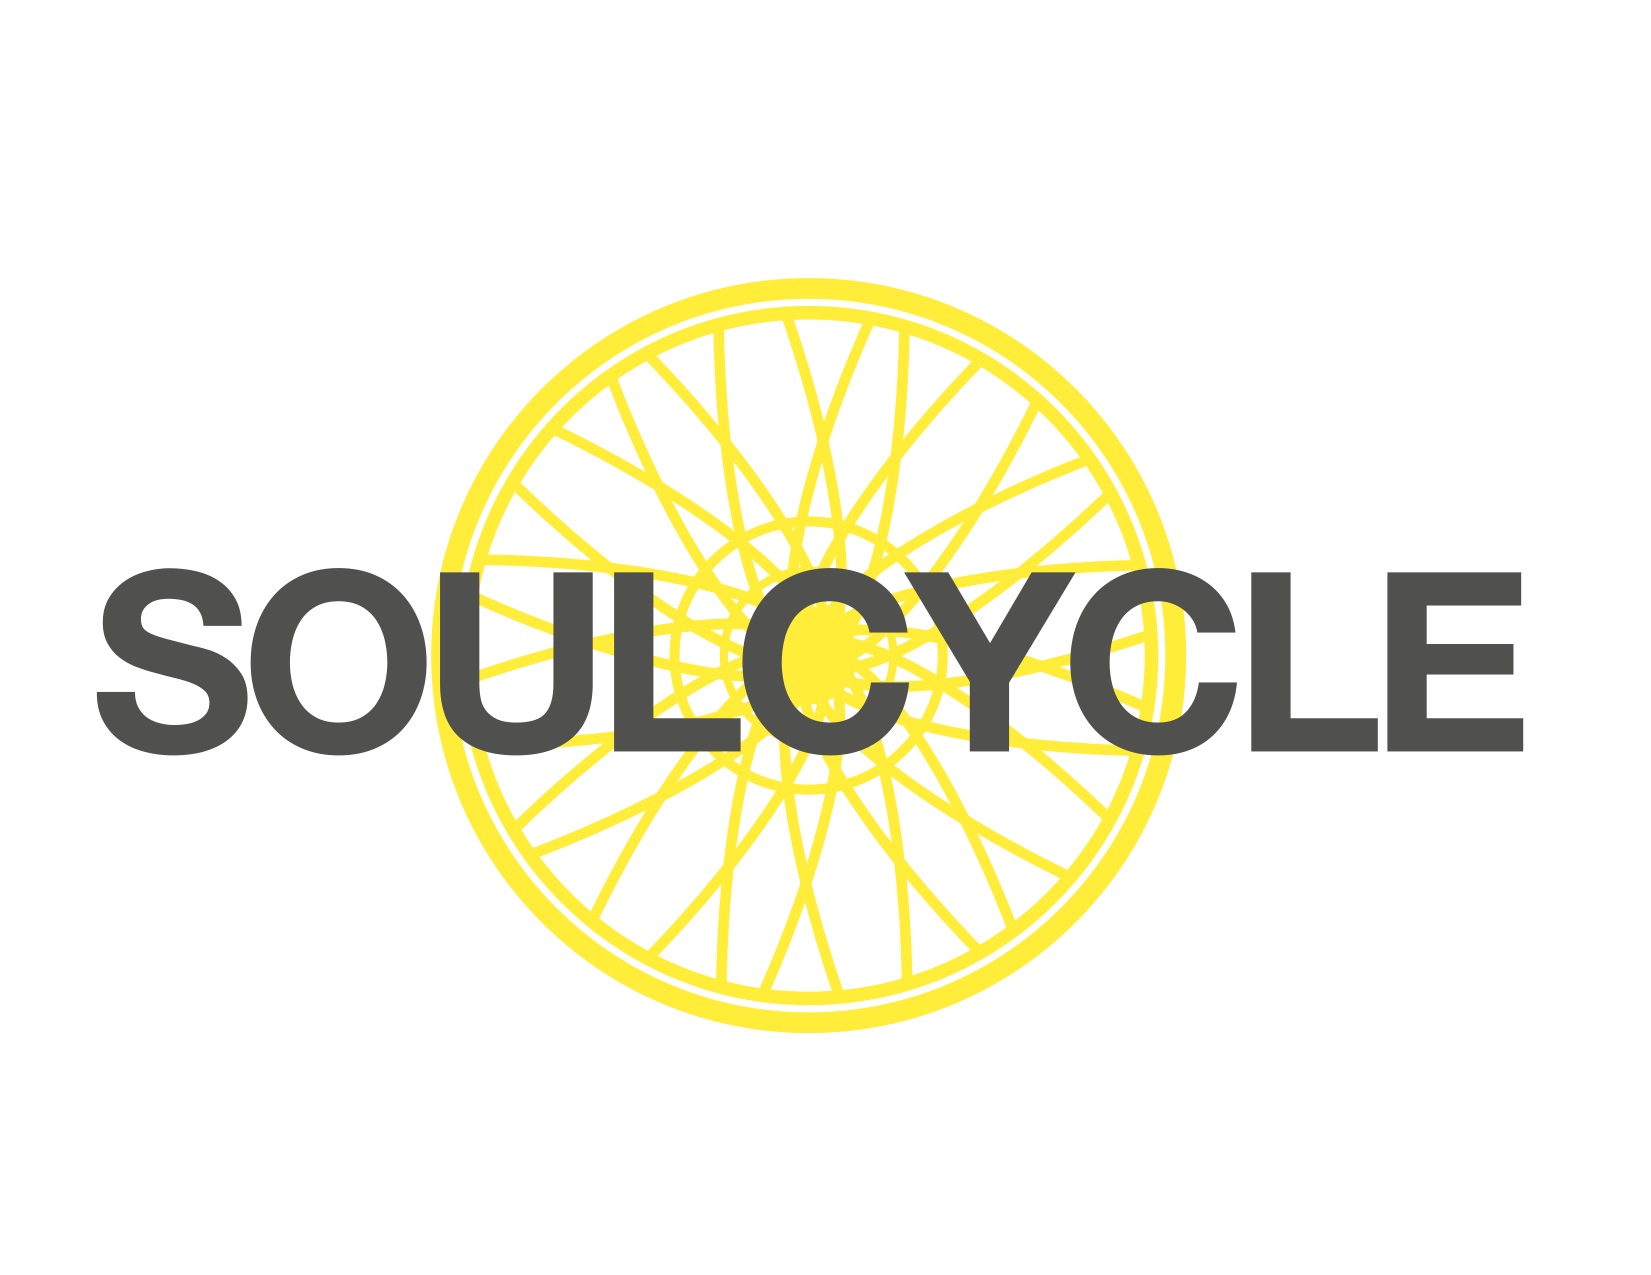 SoulCycle.jpg